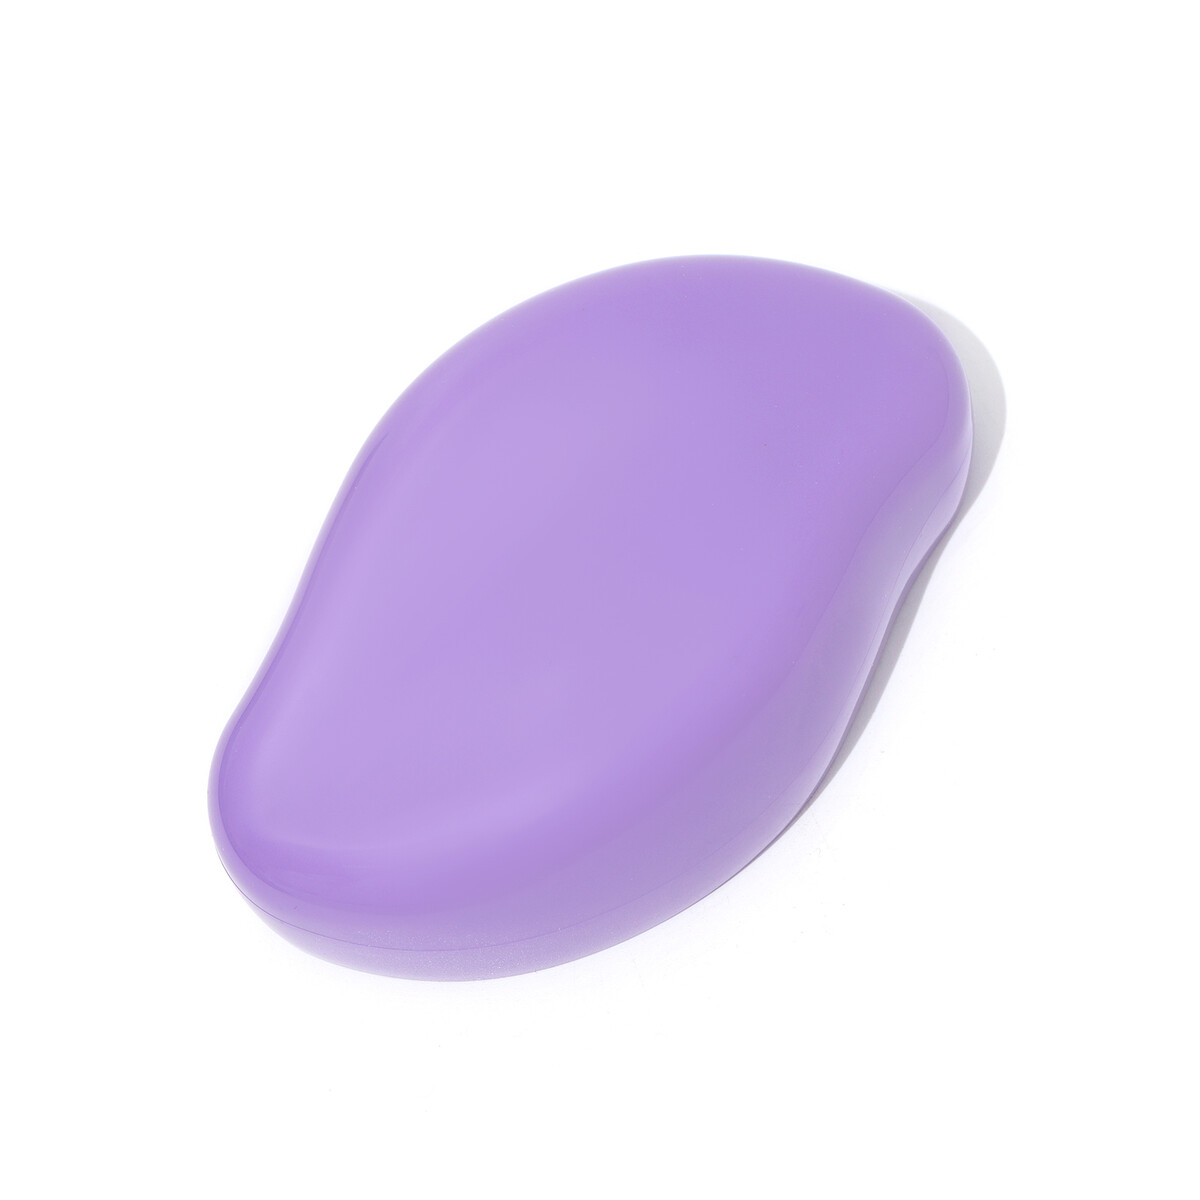 Пилинг - эпилятор, ластик, для удаления волос, фиолетовый рюкзак для обуви на молнии до 35 размера фиолетовый